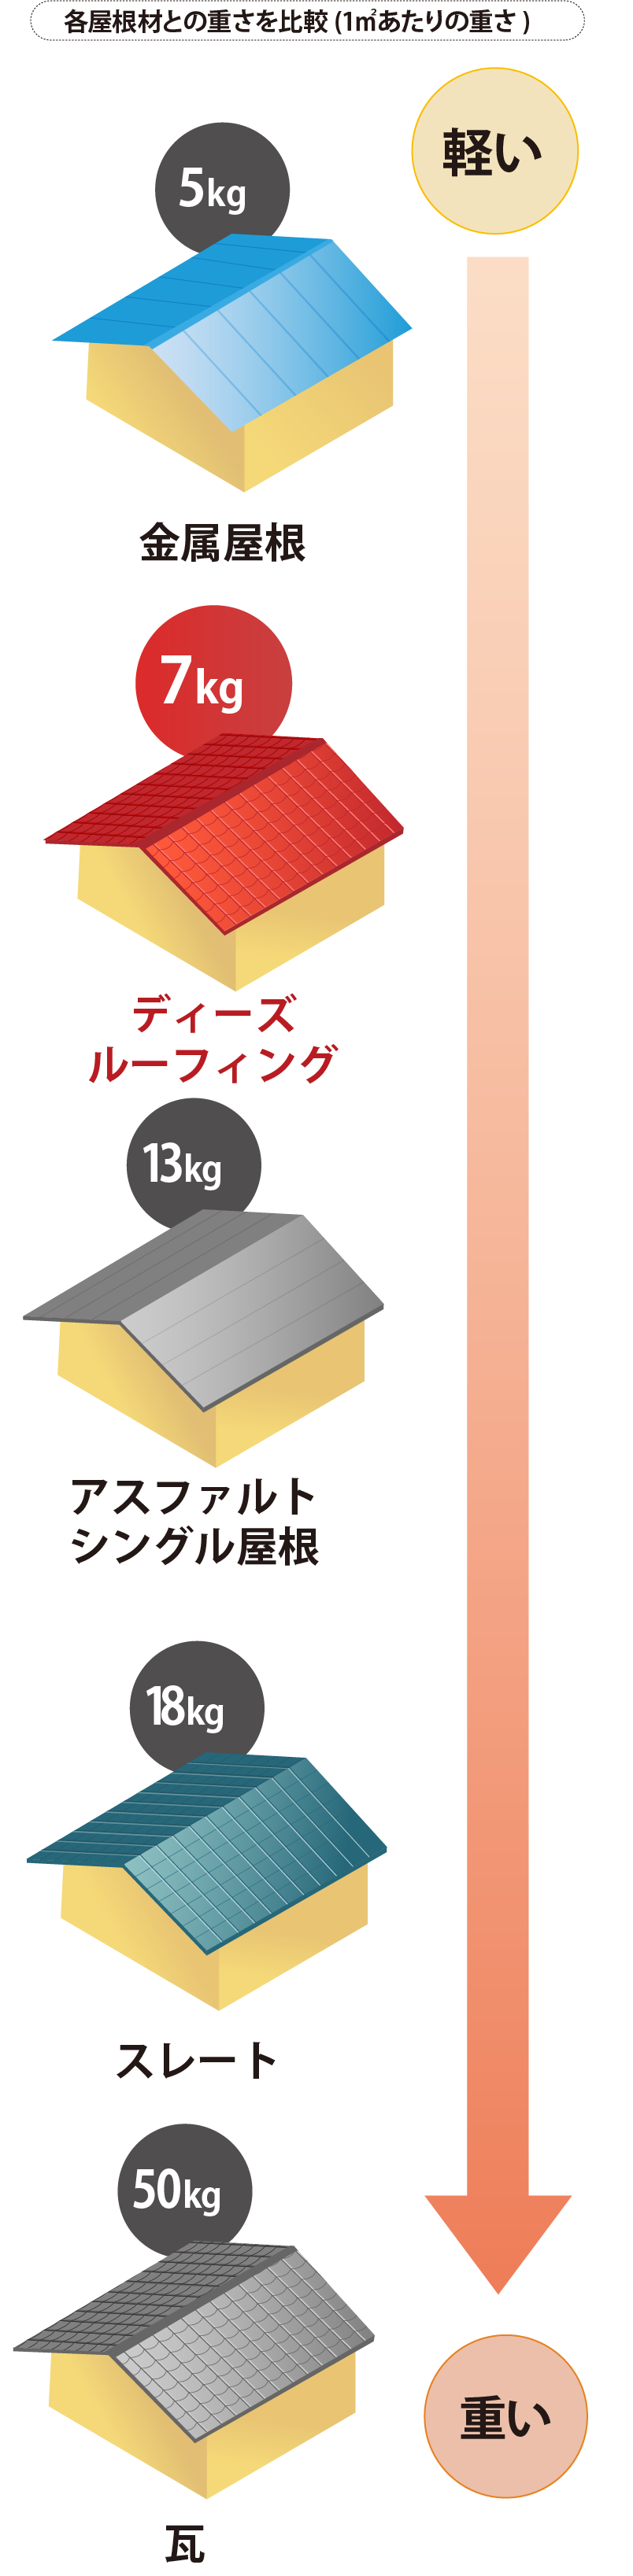 各屋根材との重さを比較(1㎡あたりの重さ